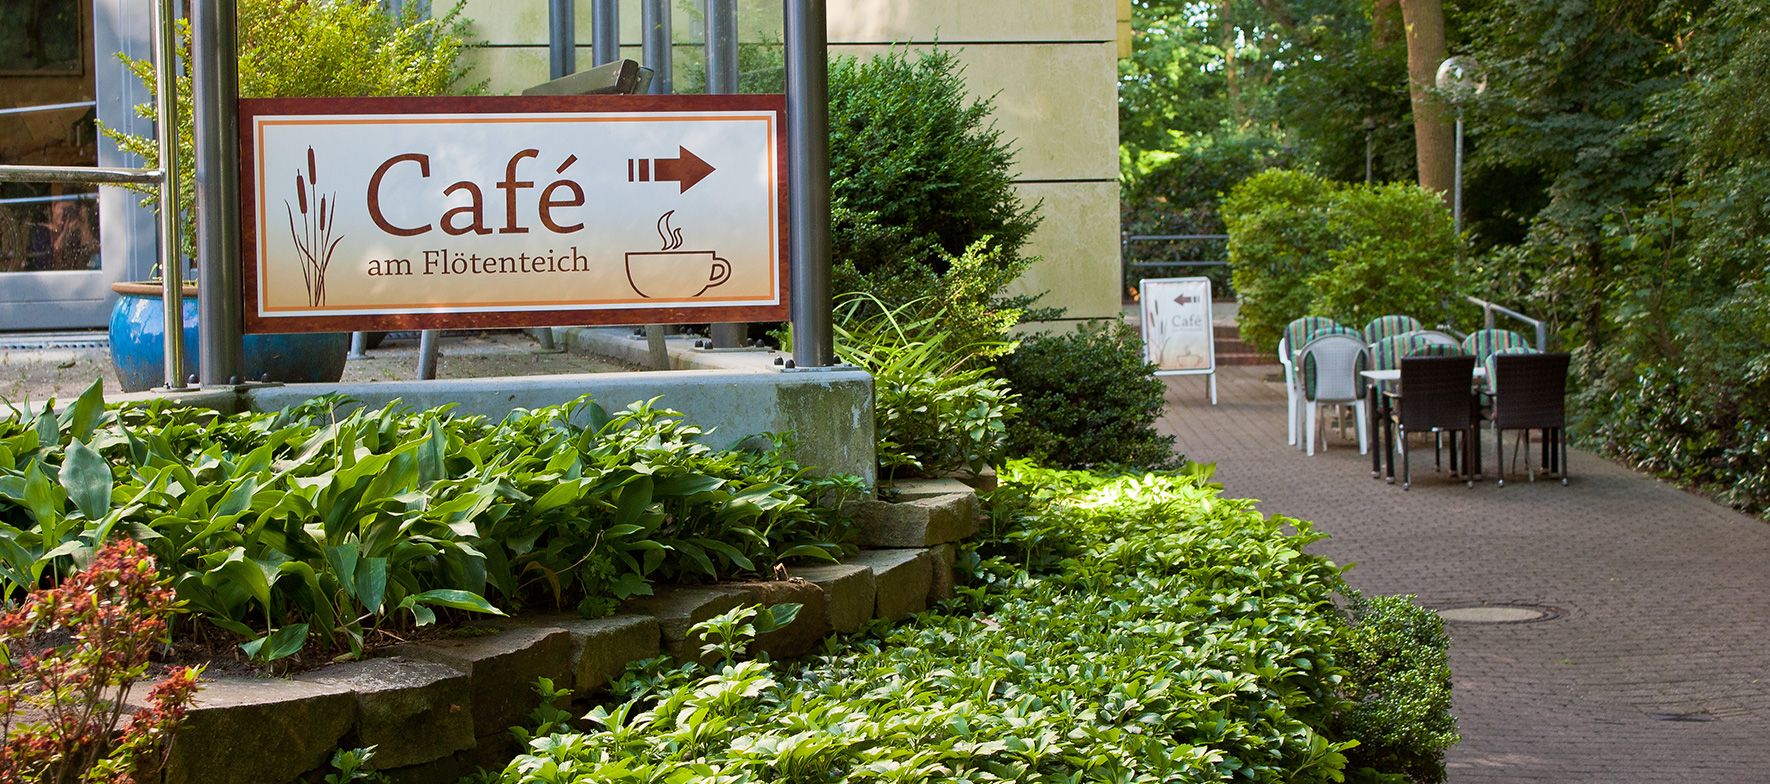 Eingang zum Café am Flötenteich in Oldenburg - Altenwohnzentrum Haus am Flötenteich